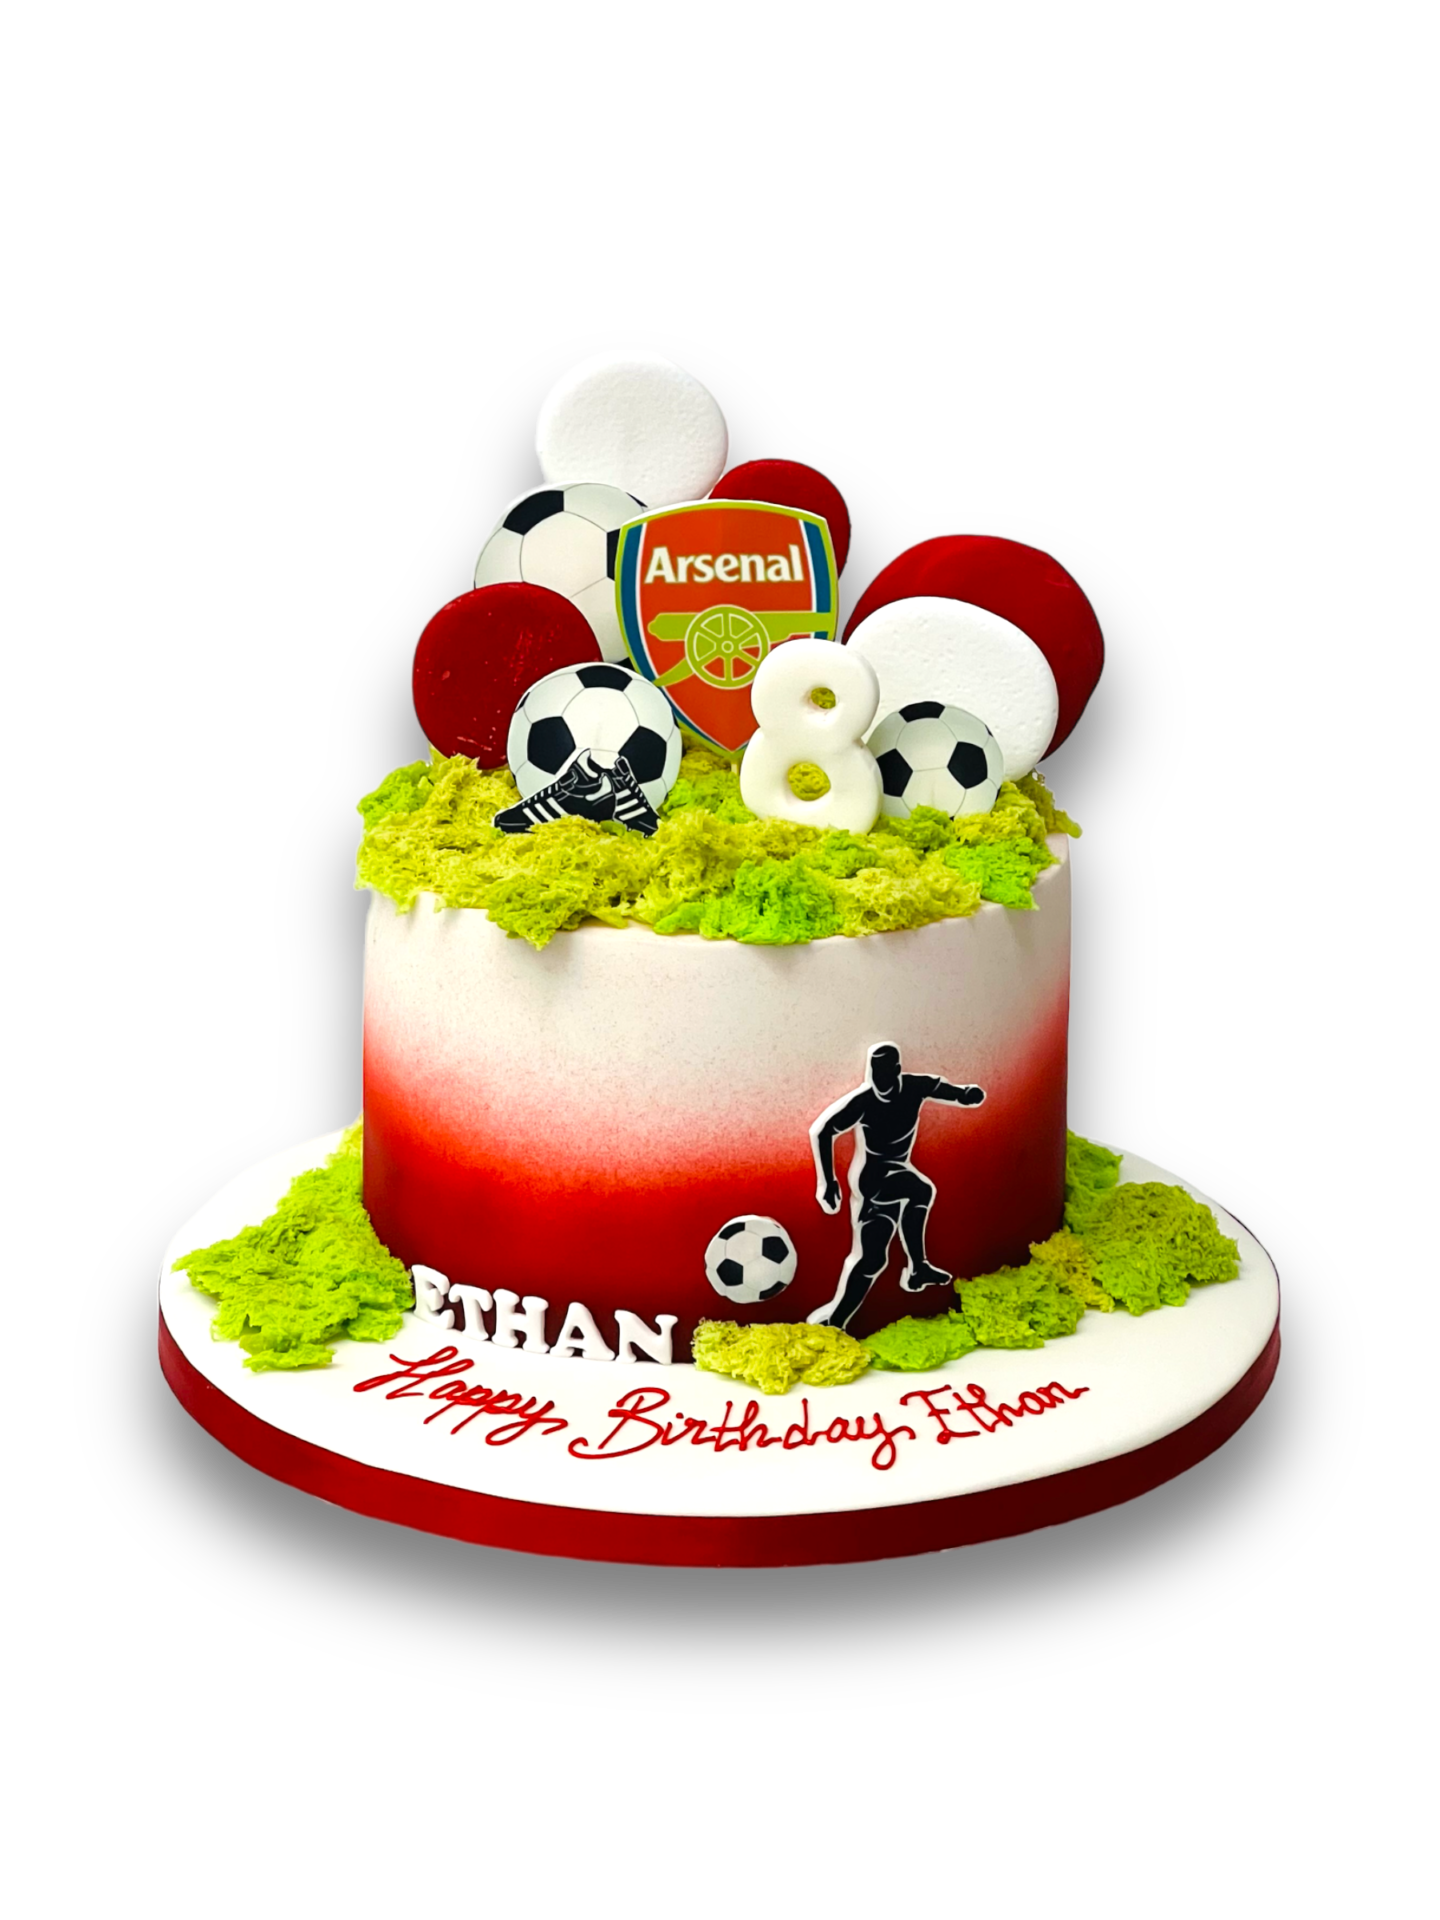 Arsenal Shirt cake - Decorated Cake by Krazy Kupcakes - CakesDecor